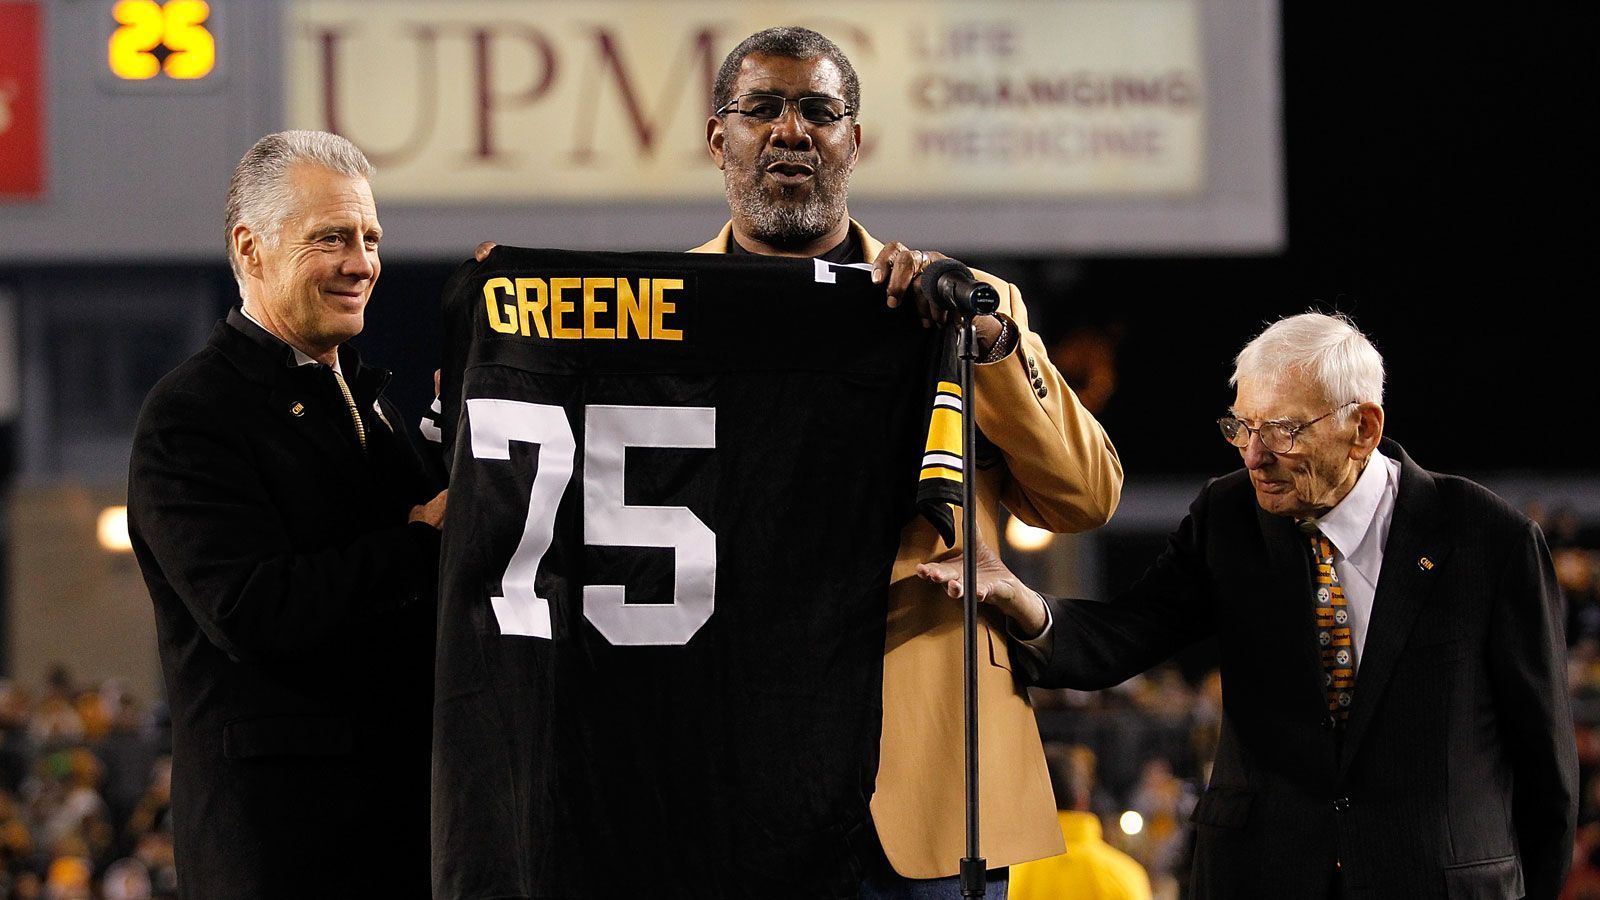 
                <strong>Steel Curtain</strong><br>
                Einer der bekanntesten Namen in der NFL. Auch heutzutage in Gebrauch. Die Defense der Pittsburgh Steelers trägt immer noch den Titel aus der Zeit der erfolgreichen 70er Jahre (hier im Bild: Charles Edward "Mean Joe" Greene) - auch wenn sie lange nicht mehr so dominiert.
              